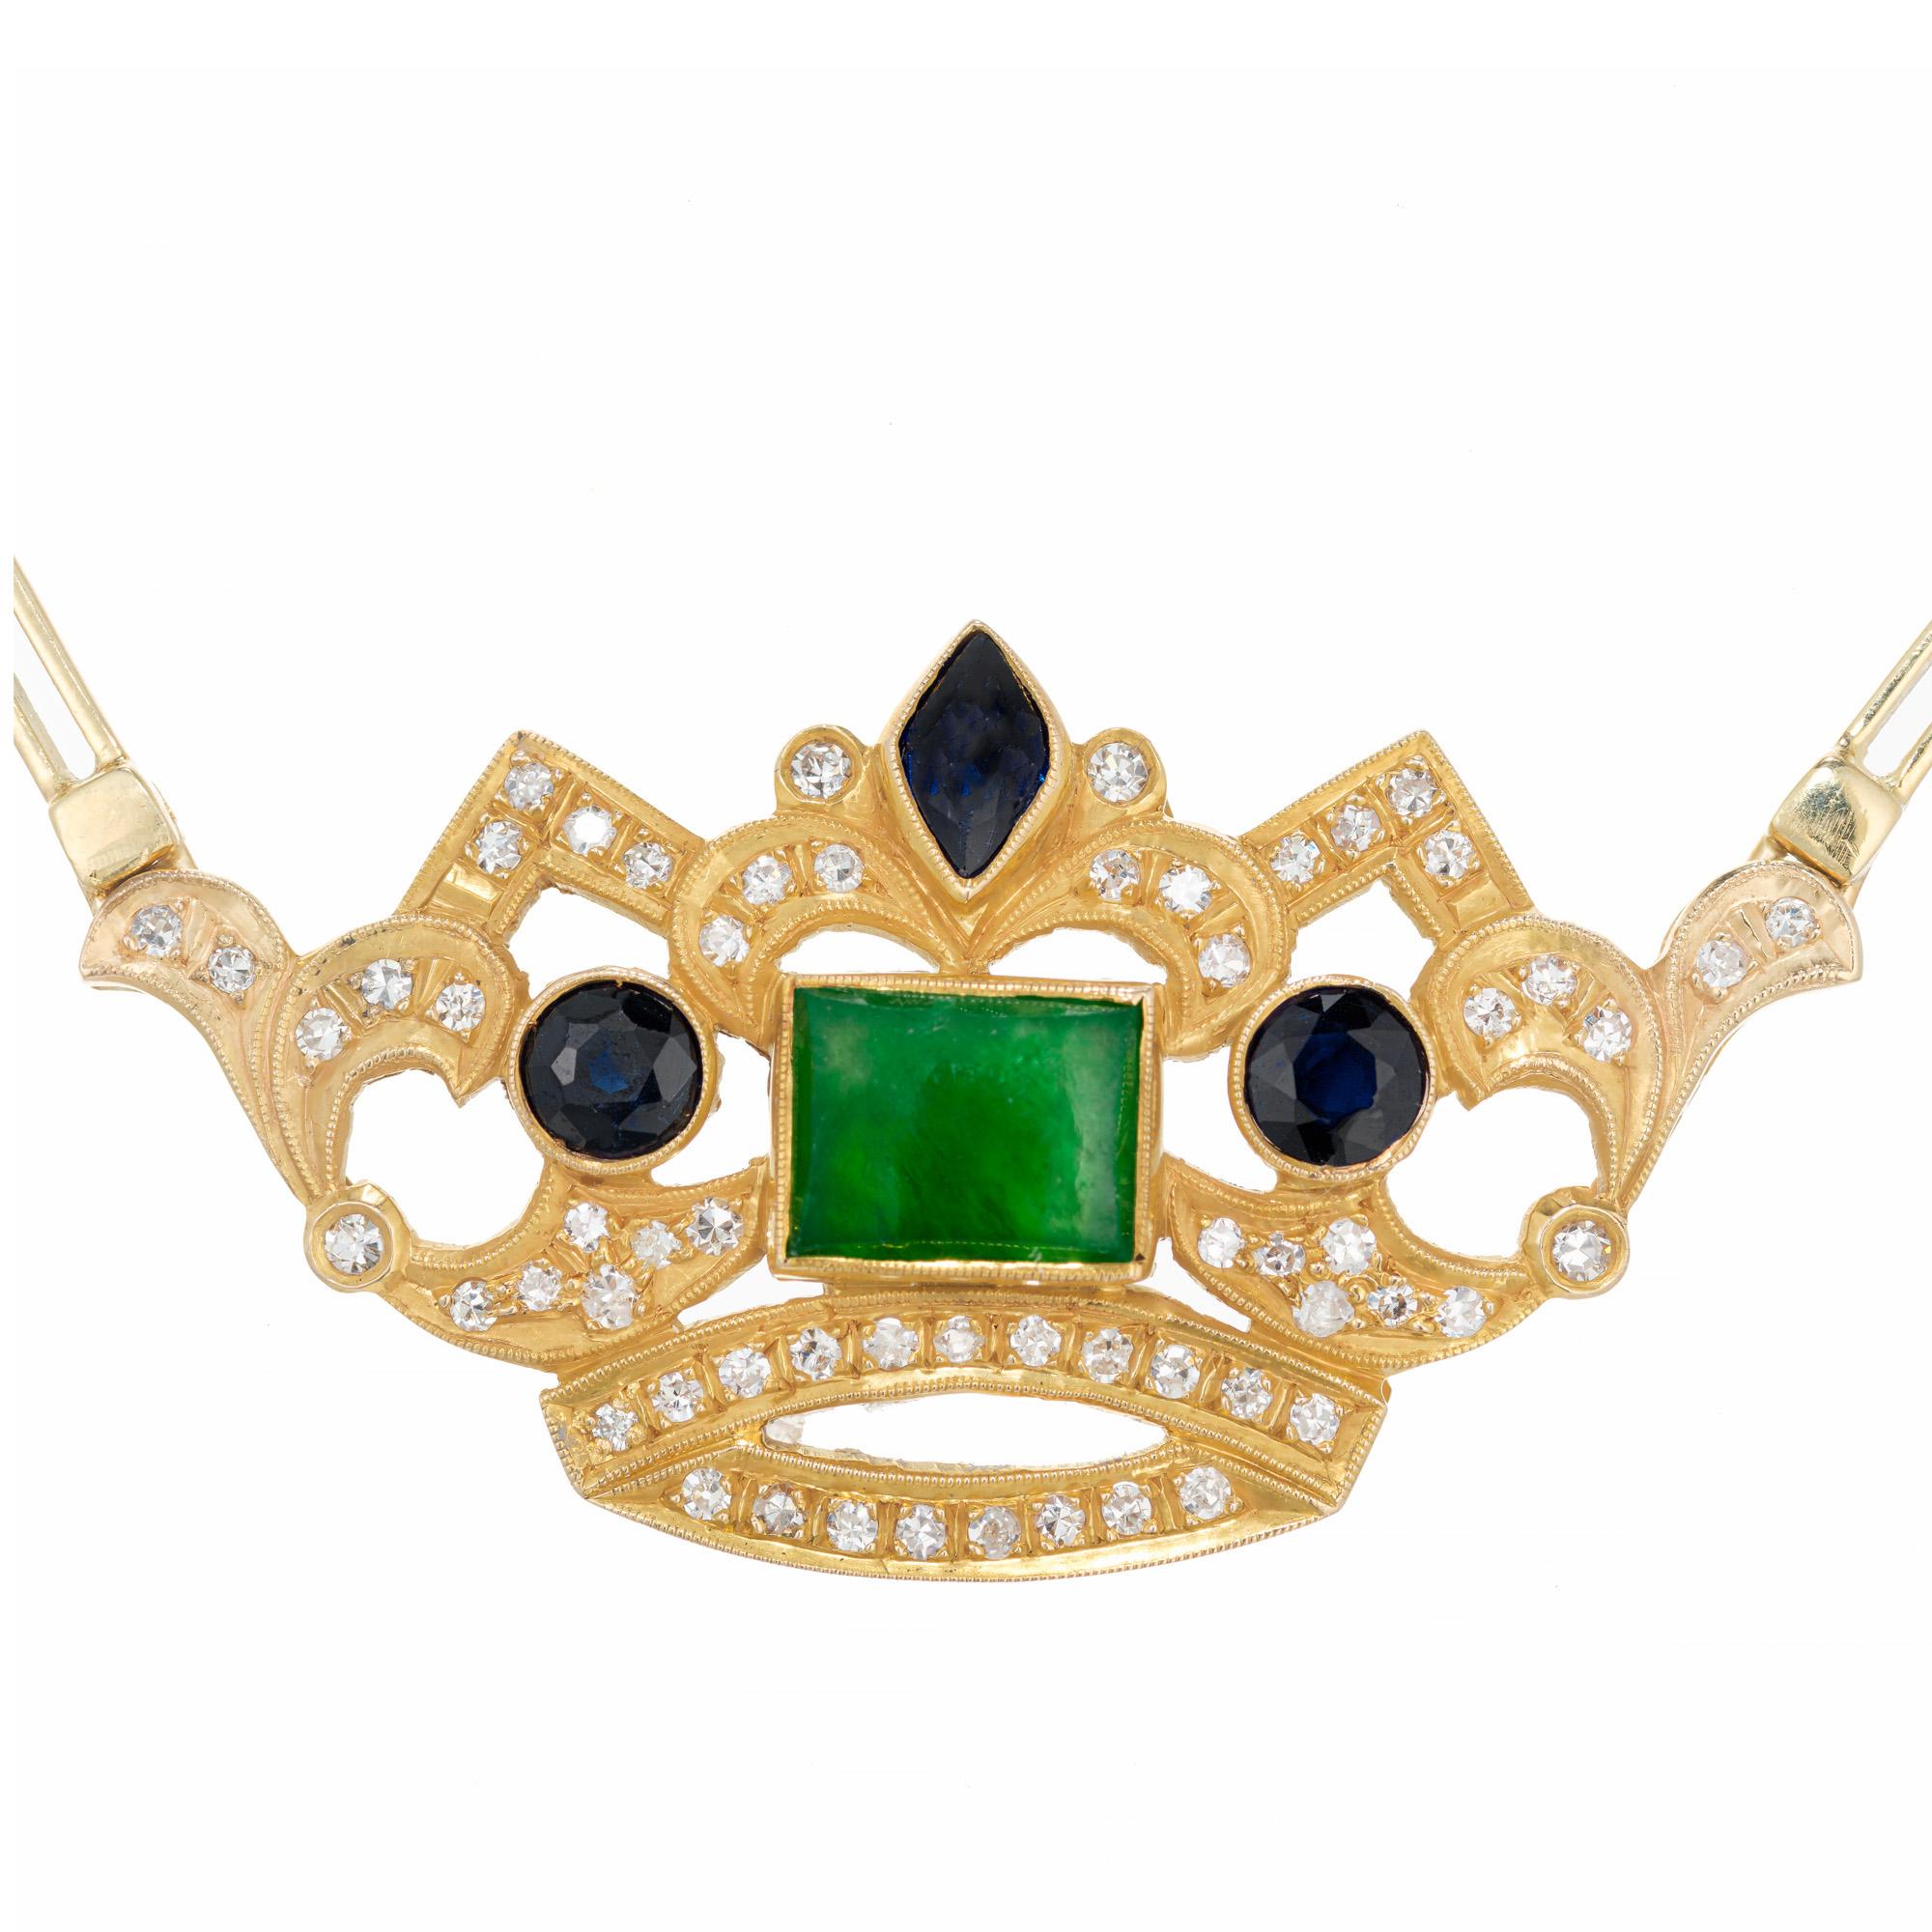 Vintage 1960's Collier pendentif couronne en jade, saphir et diamant. La couronne en or jaune 18 carats est ornée d'une pierre centrale rectangulaire en jadéite naturelle certifiée par le GIA, qui est certifiée non traitée. Un saphir de taille